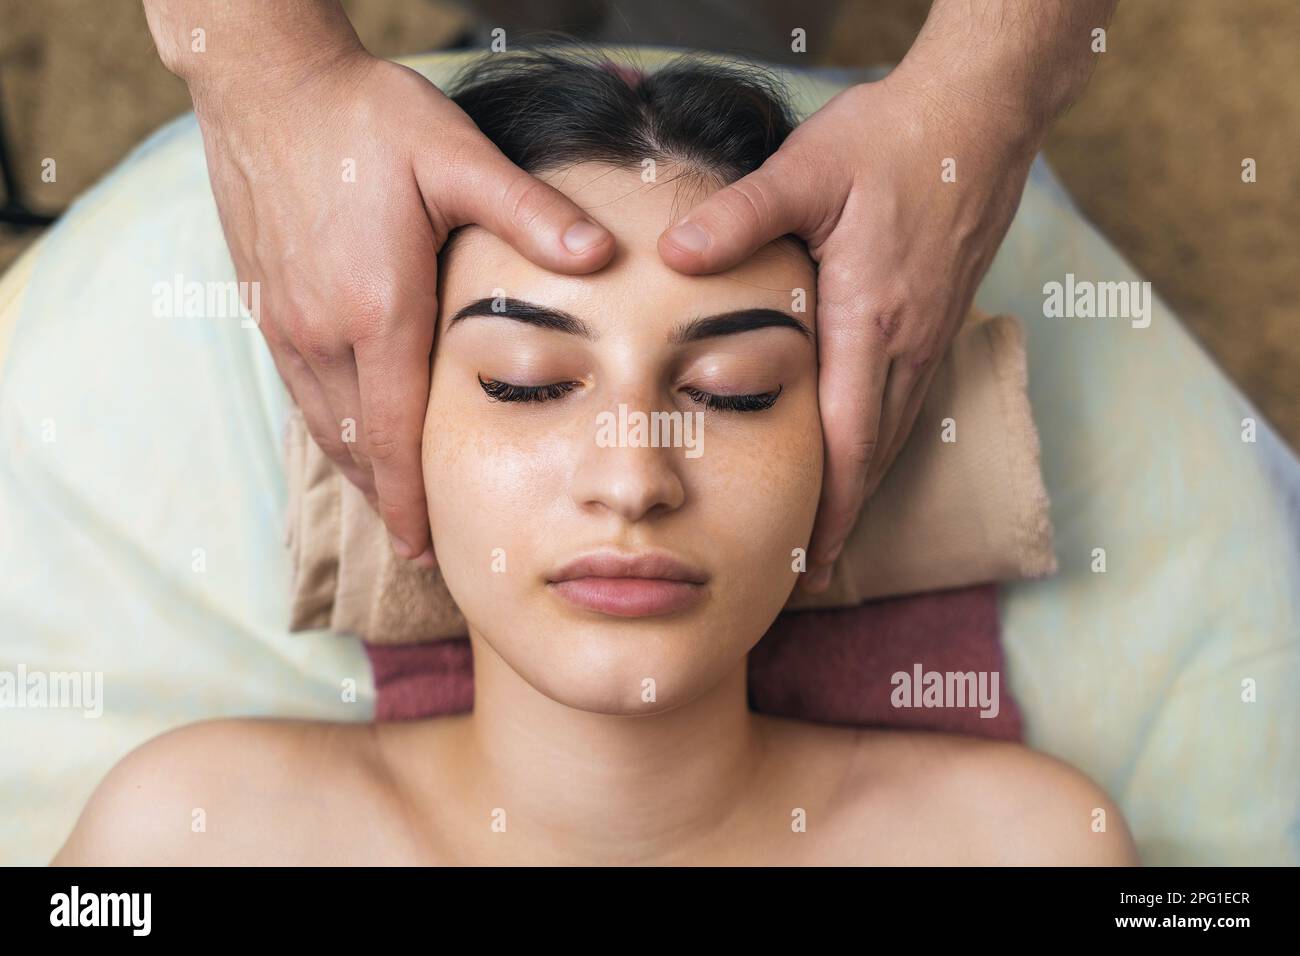 Der Spezialist macht eine entspannende Massage der Gesichtsmuskulatur an eine weibliche Klientin, eine Nahaufnahme des Gesichts von oben Stockfoto